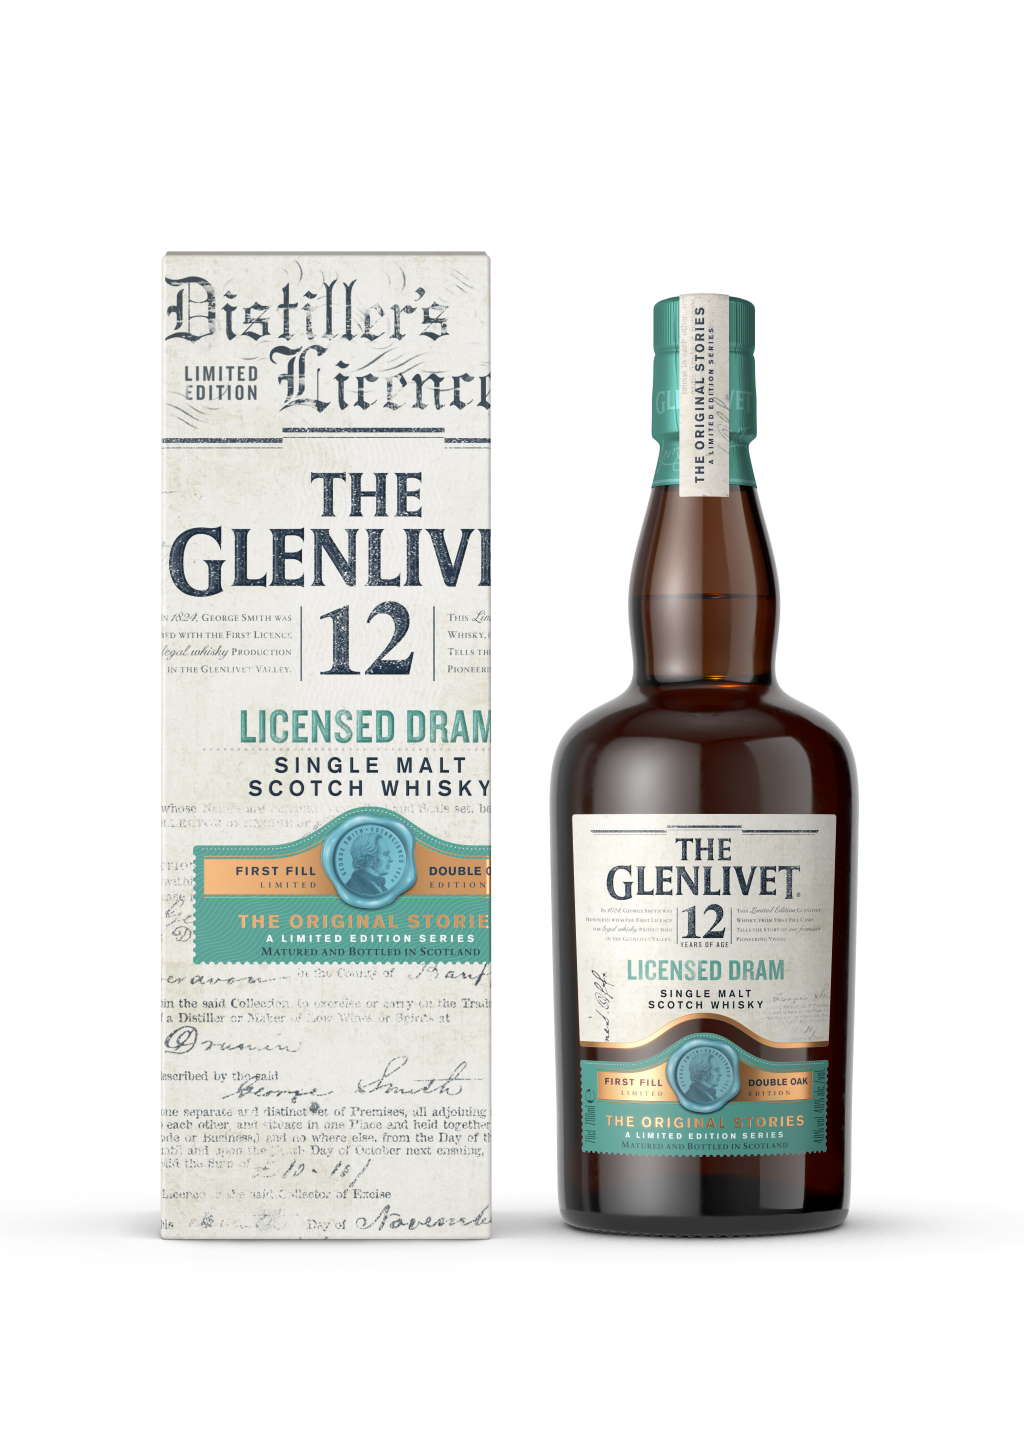 The Glenlivet Licensed Dram Flasche und Karton